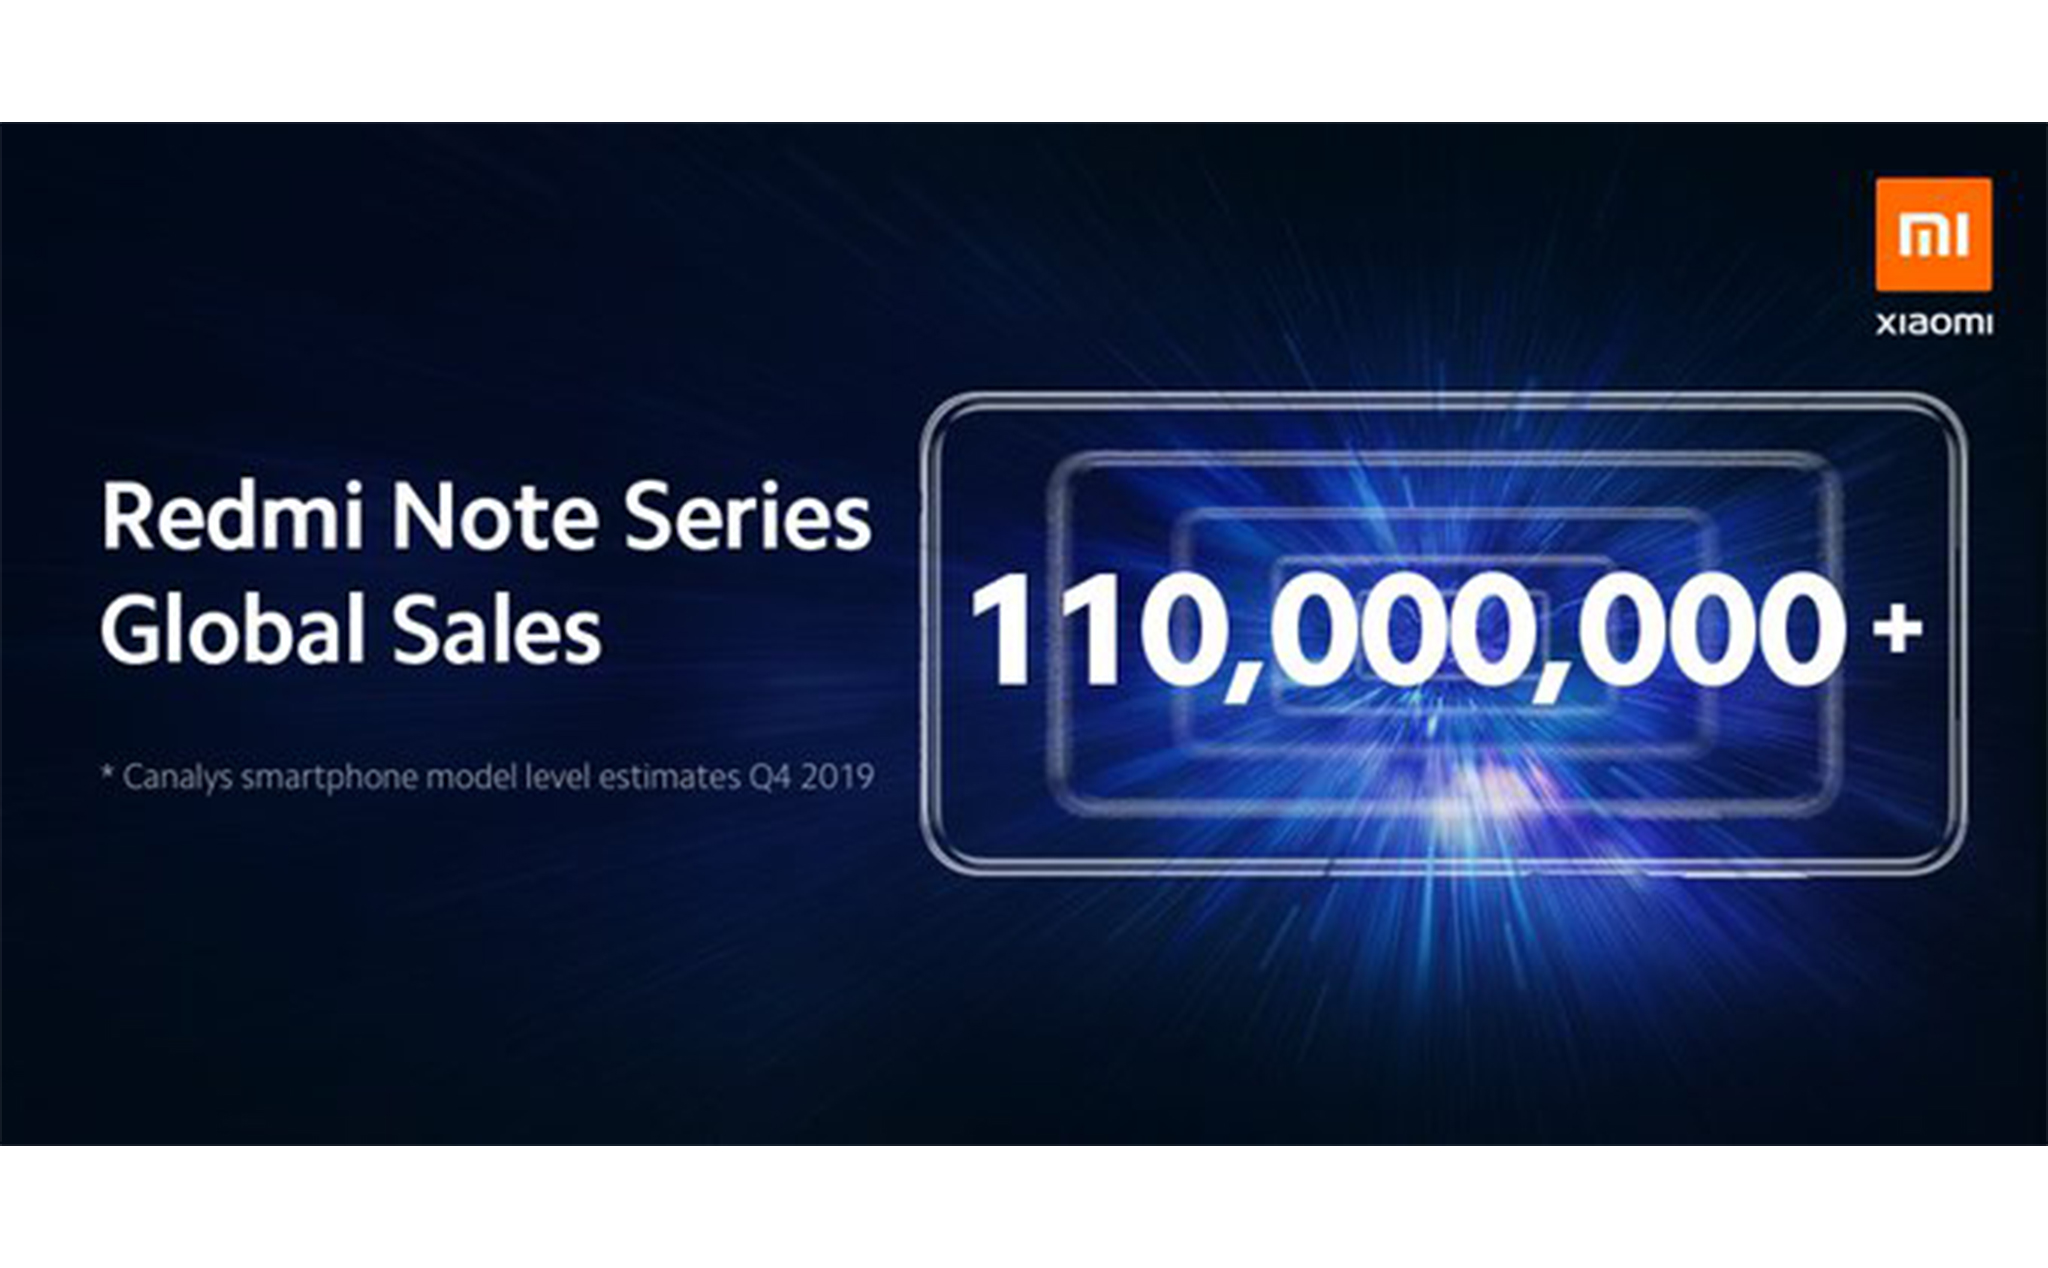 Redmi Note đã bán được hơn 110 triệu thiết bị trên toàn cầu